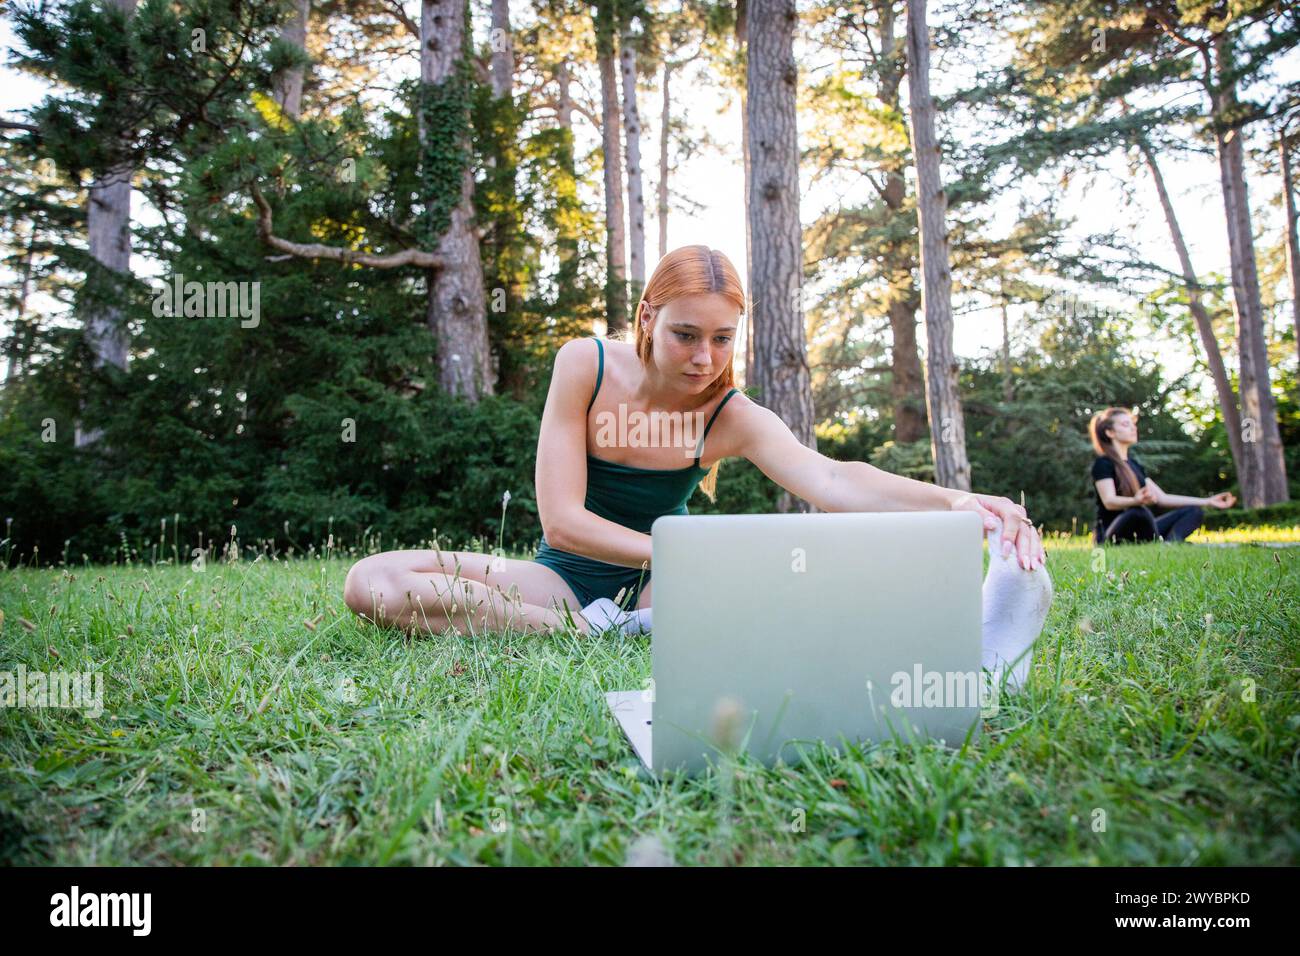 Una donna è seduta sull'erba con un portatile di fronte a lei. Guarda lo schermo e si concentra sul suo lavoro. La scena suggerisce una pace Foto Stock